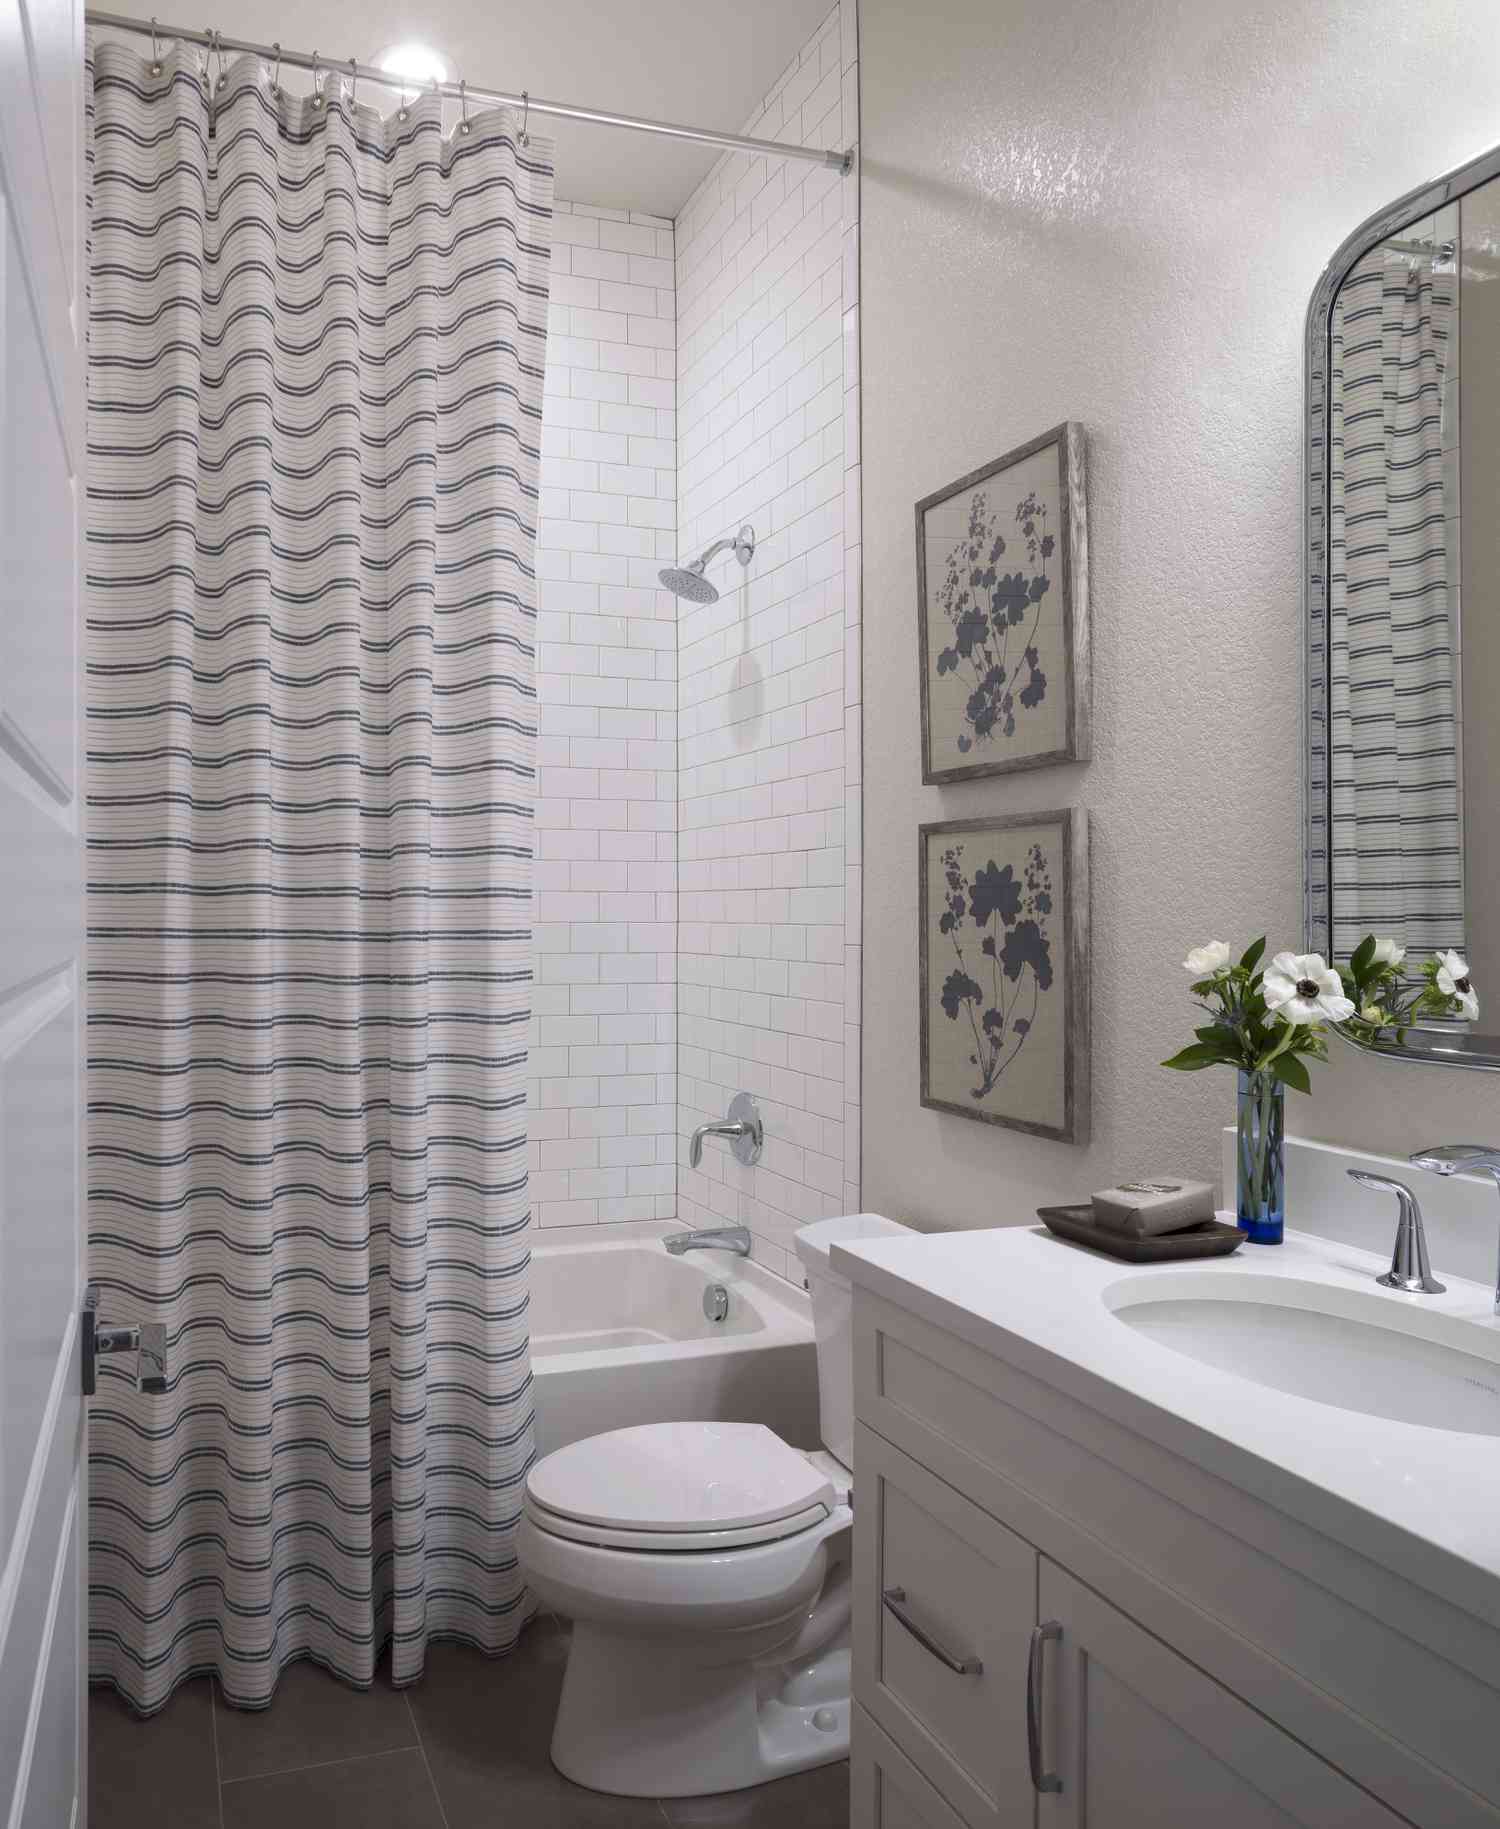 Ein weißes Badezimmer hat einen gestreiften Duschvorhang und zwei beige Bilder mit blauen Blumen, die zum gestreiften Vorhang passen